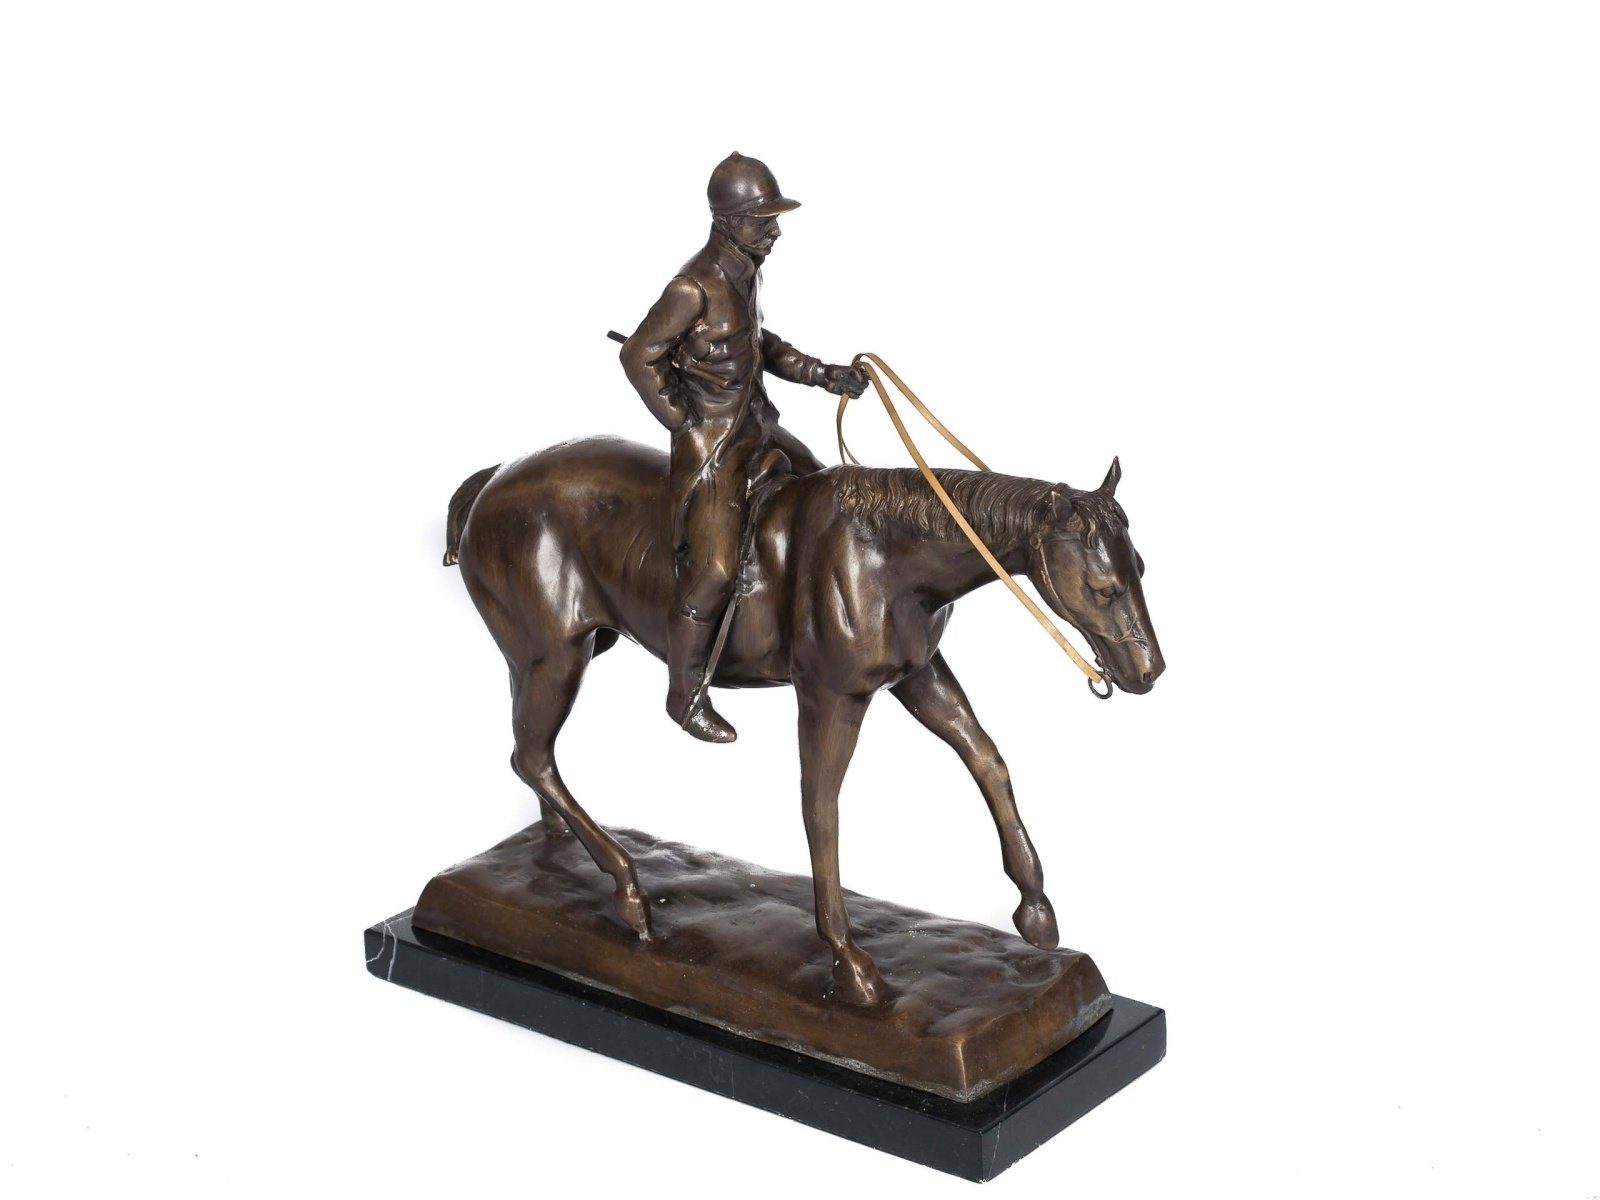 Aubaho Skulptur Bronze Skulptur Bronzeskulptur Bronze kg 9,4 Reiter Pferd Figur Jockey